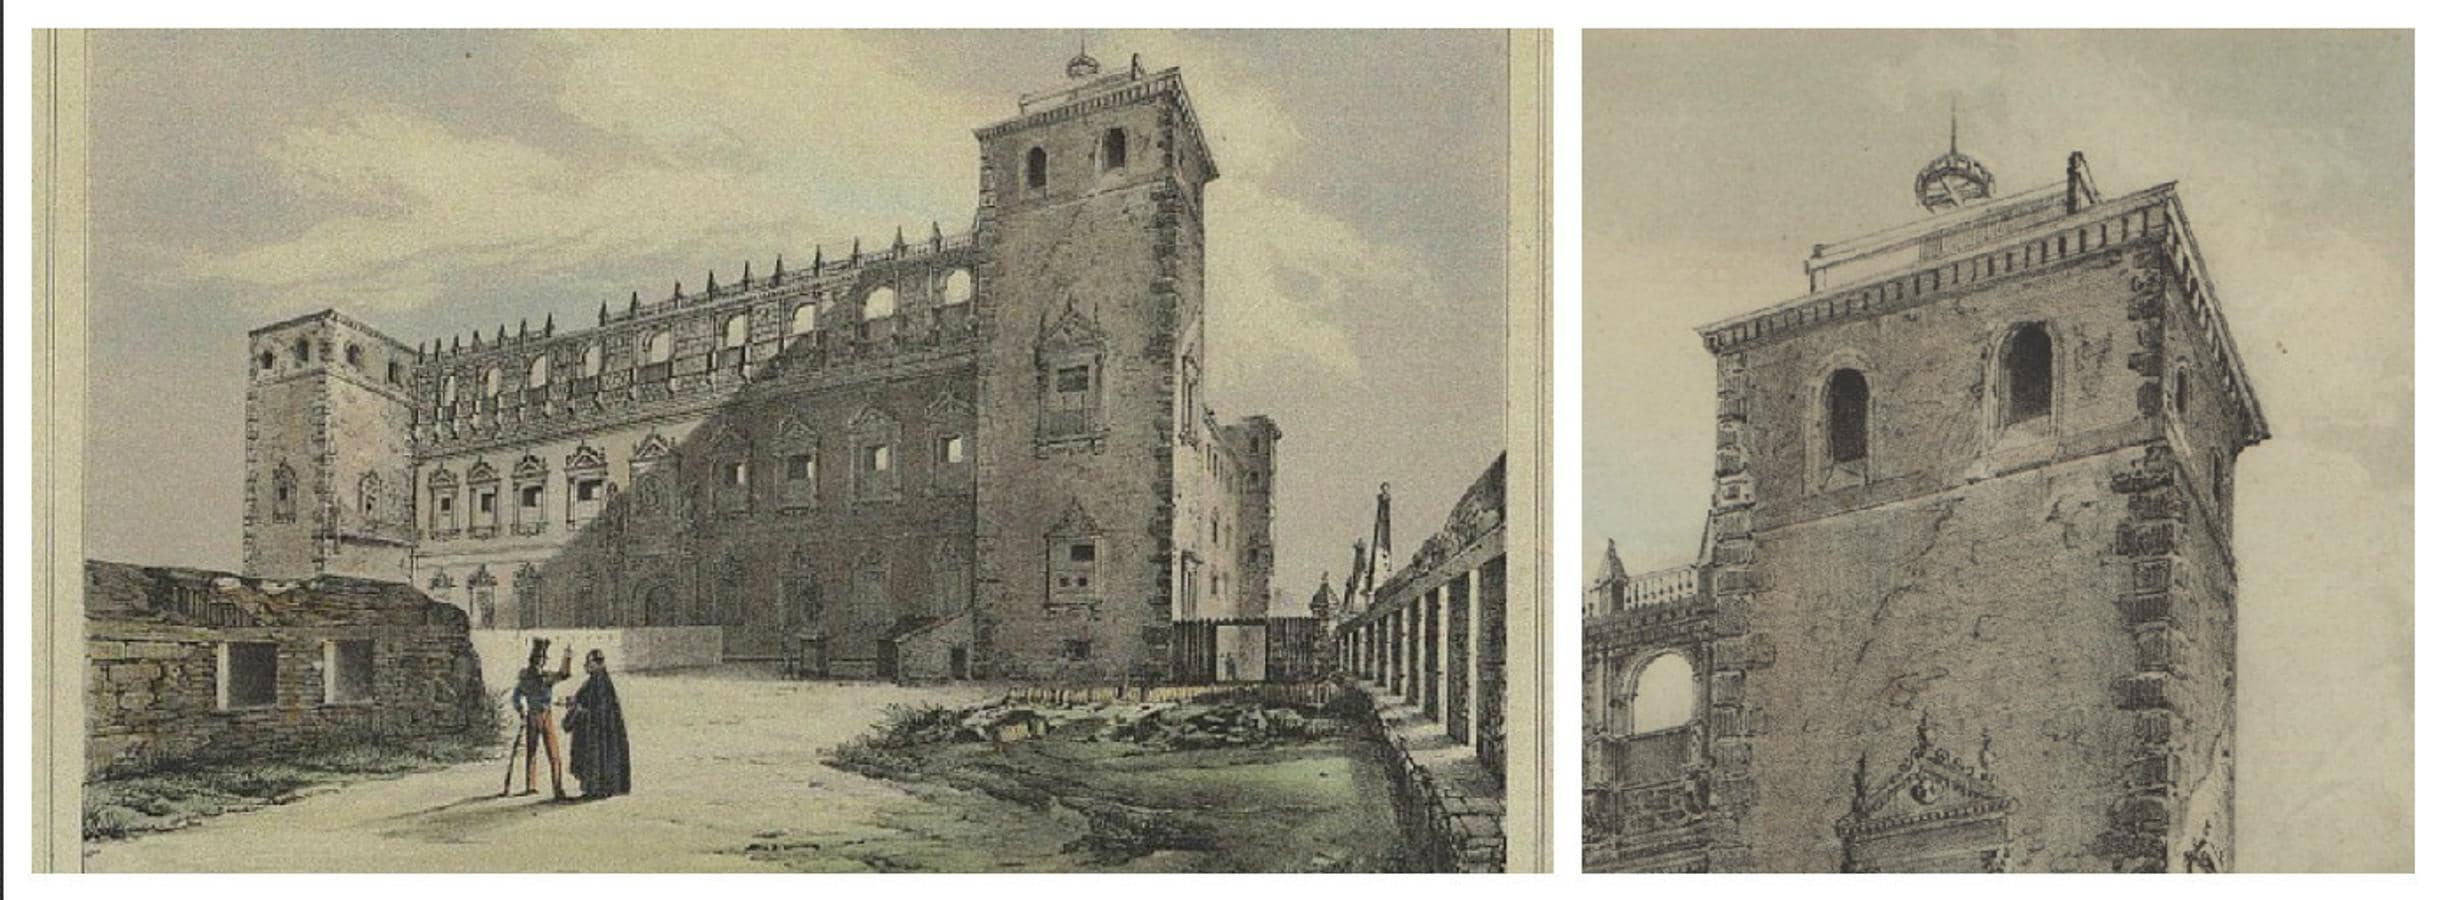 Fachada norte del Alcázar en 1848. Álbum artístico de Toledo, ilustrado por Doroteo Bachiller. Detalle del telégrafo óptico de Mathé en el torreón NO que se retiró hacia 1857